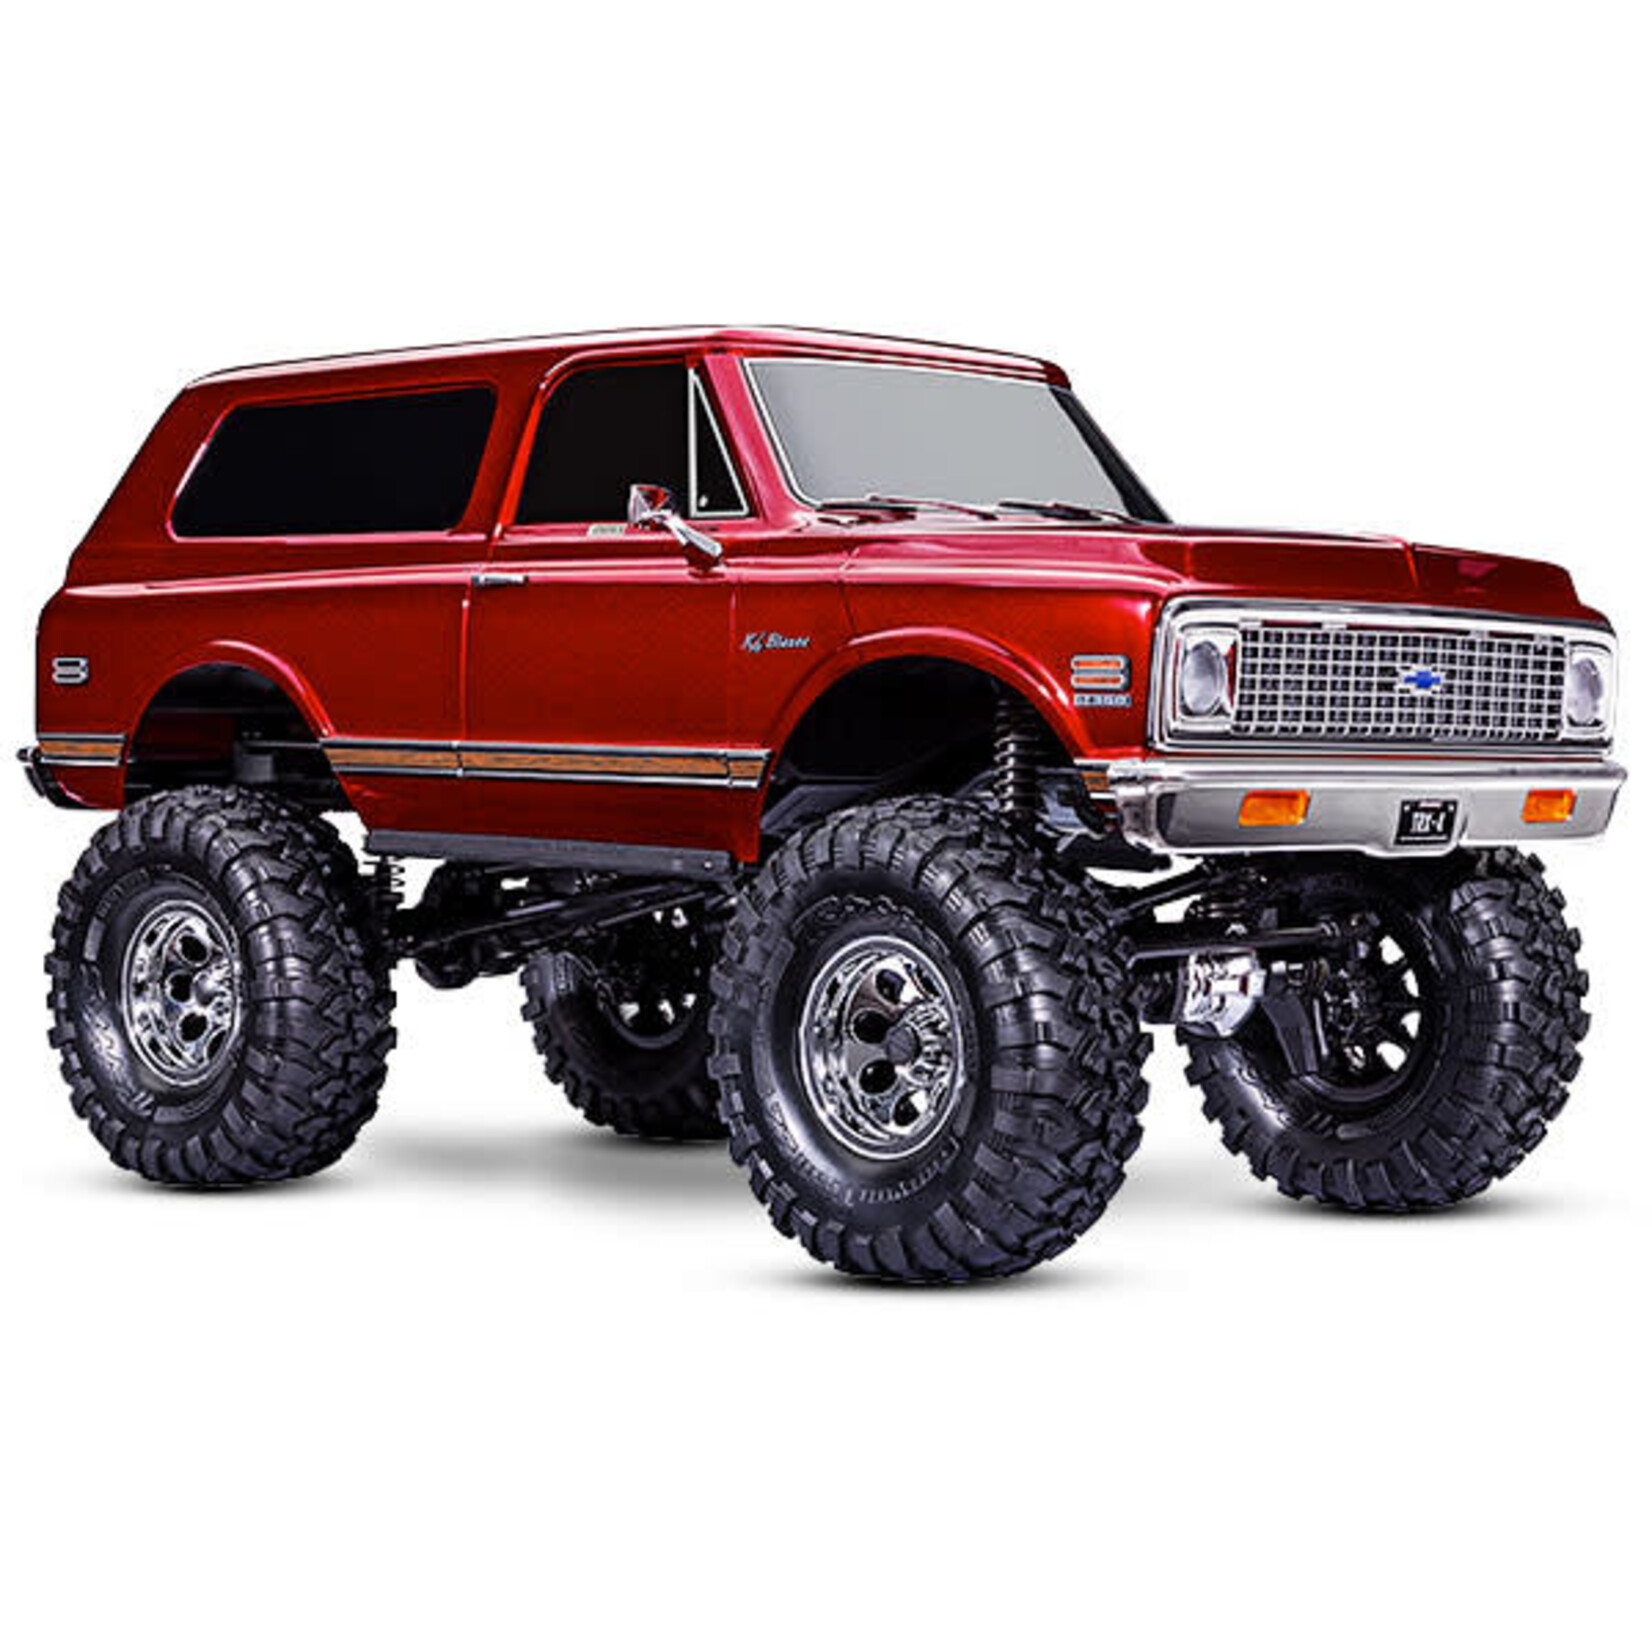 Traxxas Traxxas TRX-4 1/10 High Trail Edition RC Crawler w/'72 Chevy K5 Blazer Body (Red) & TQi 2.4GHz Radio #92086-4-RED